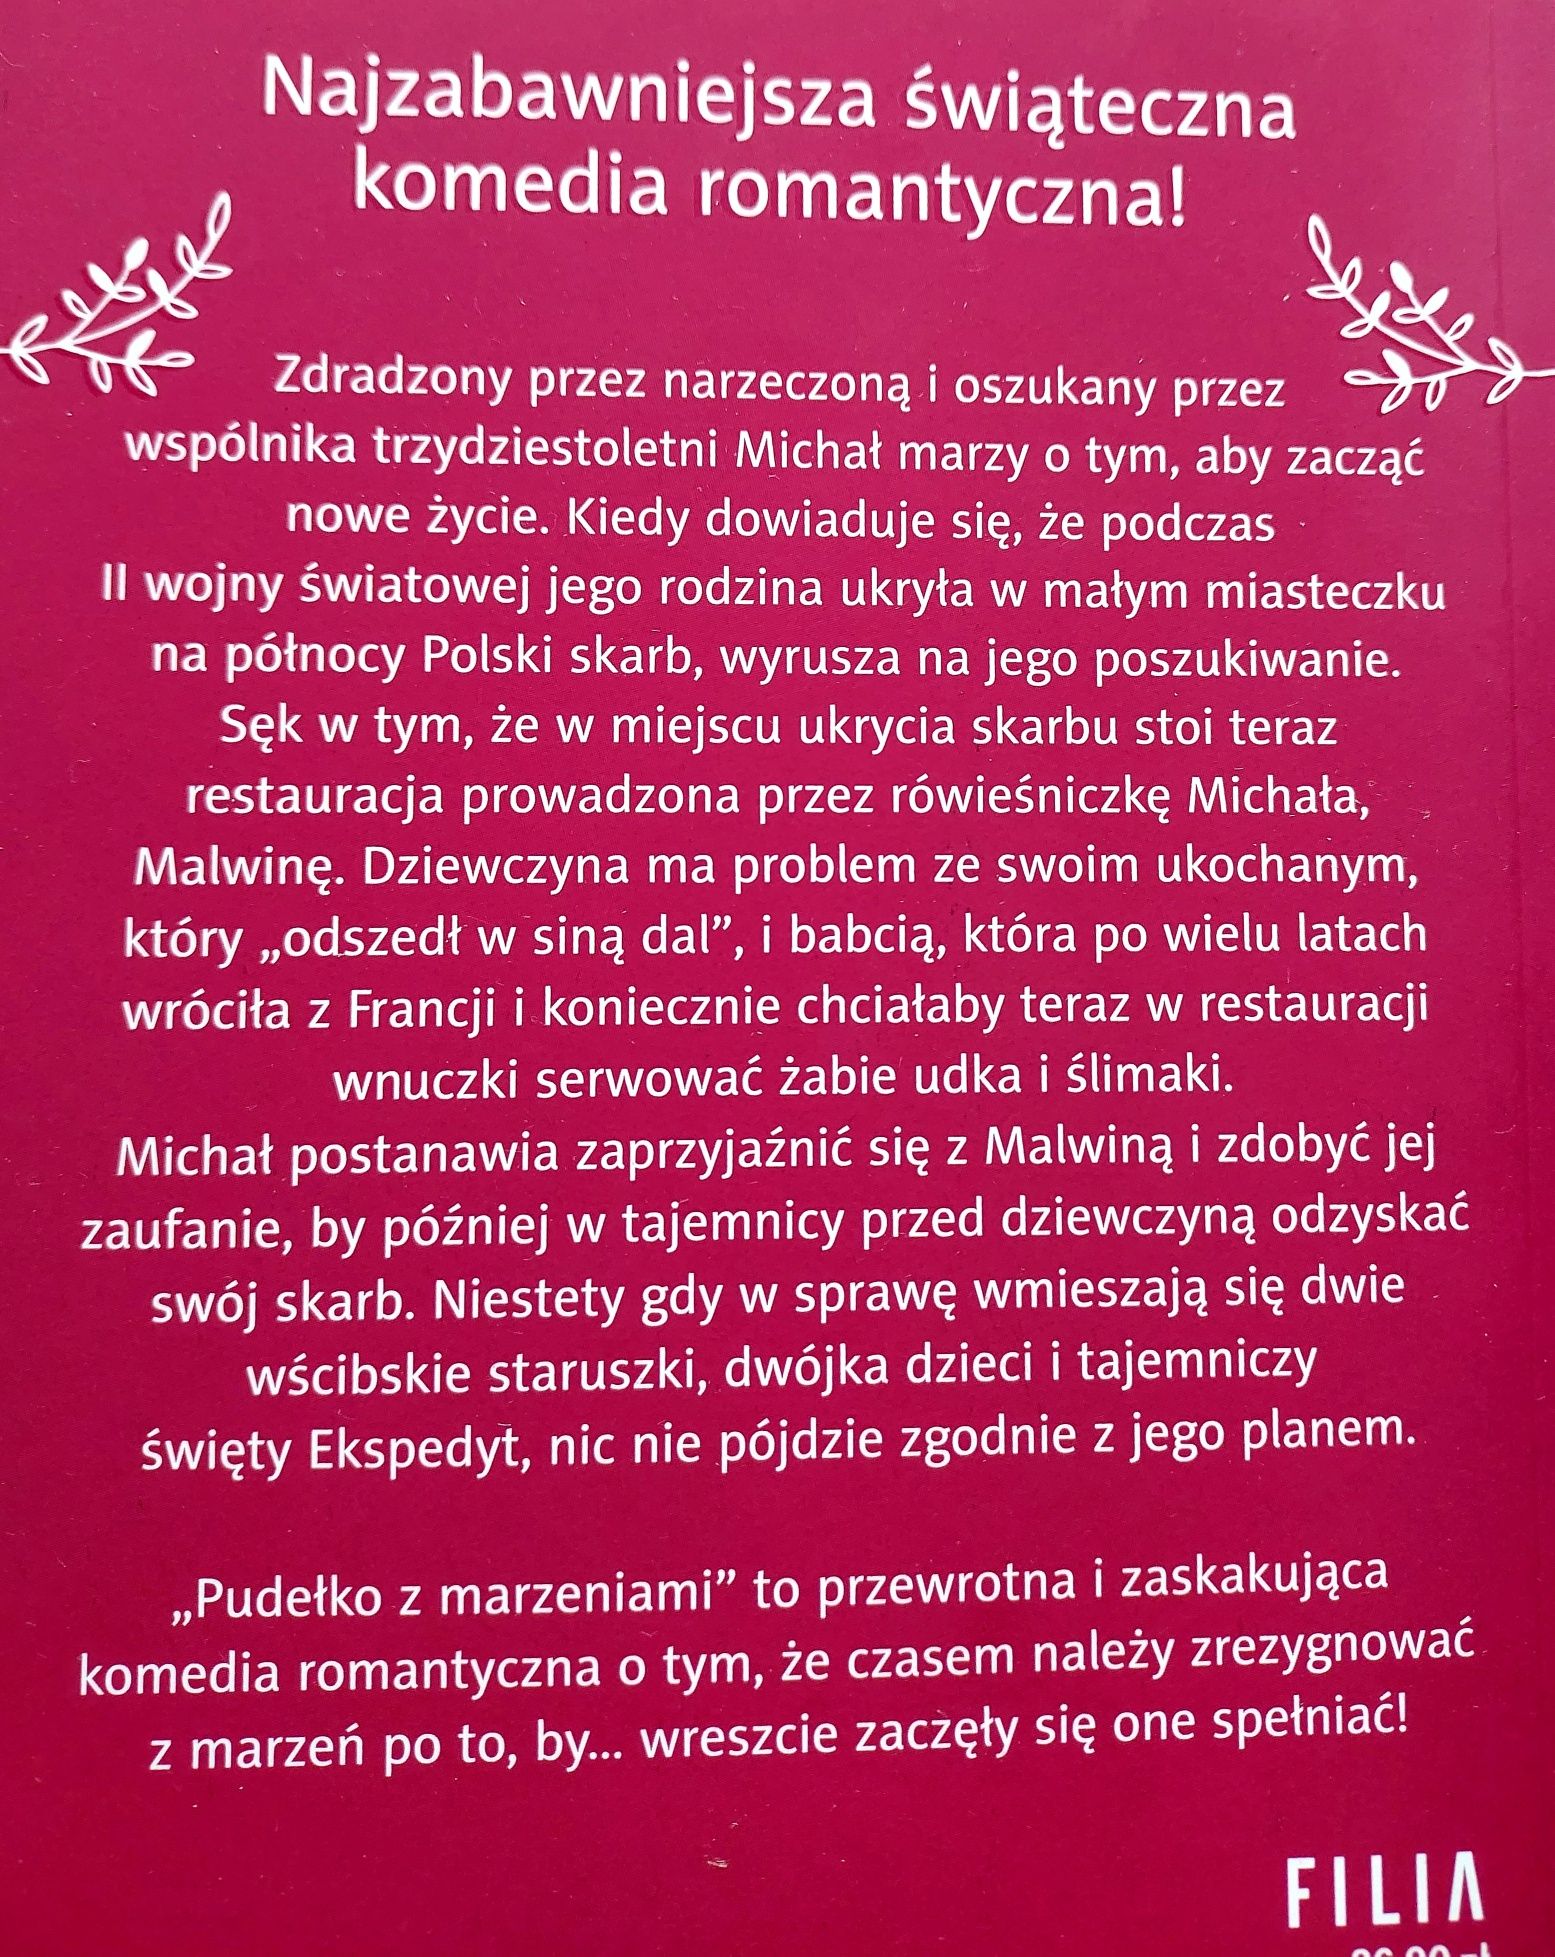 "Pudełko z marzeniami" M. Witkiewicz, A. Rogoziński